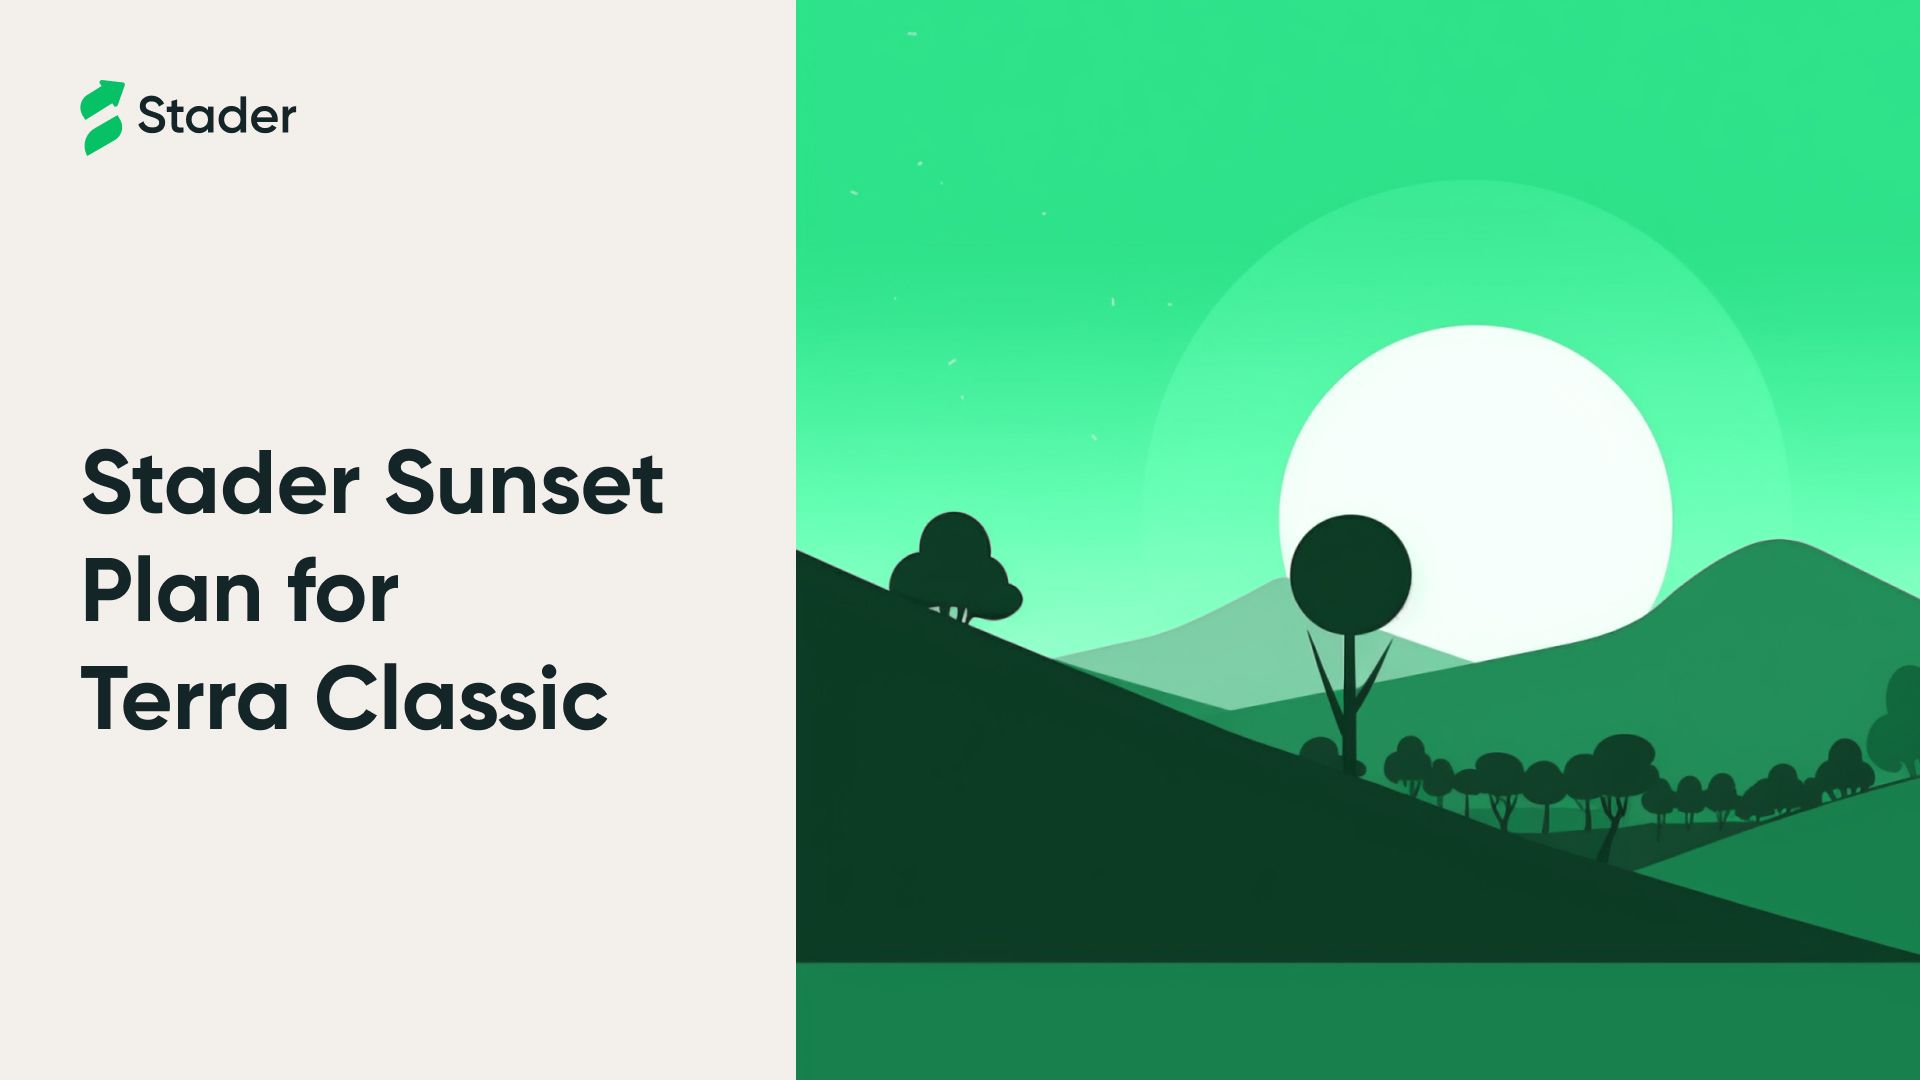 Stader’s Sunset Plan for Terra Classic